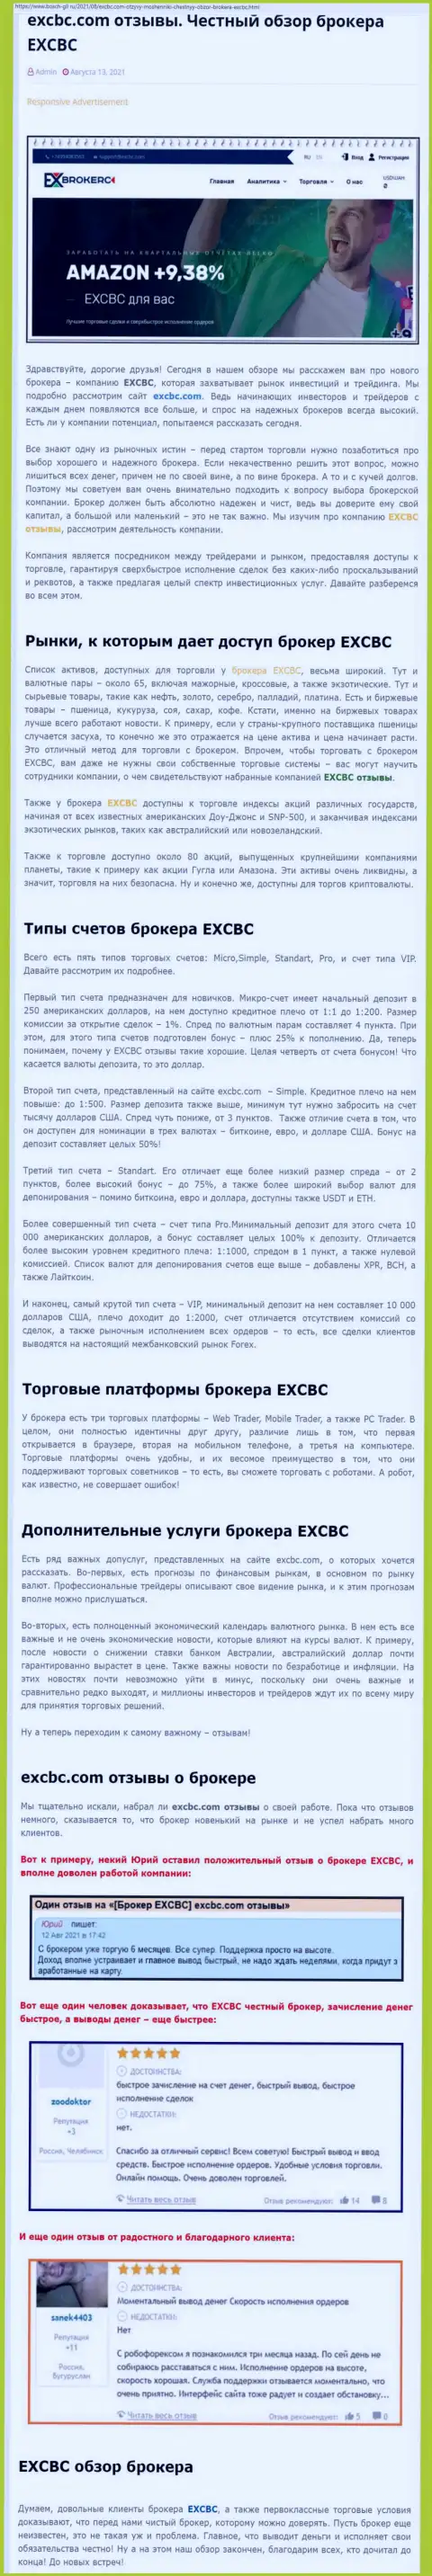 Обзорный материал об форекс-брокерской компании EXCBC на информационном сервисе bosch-gll ru